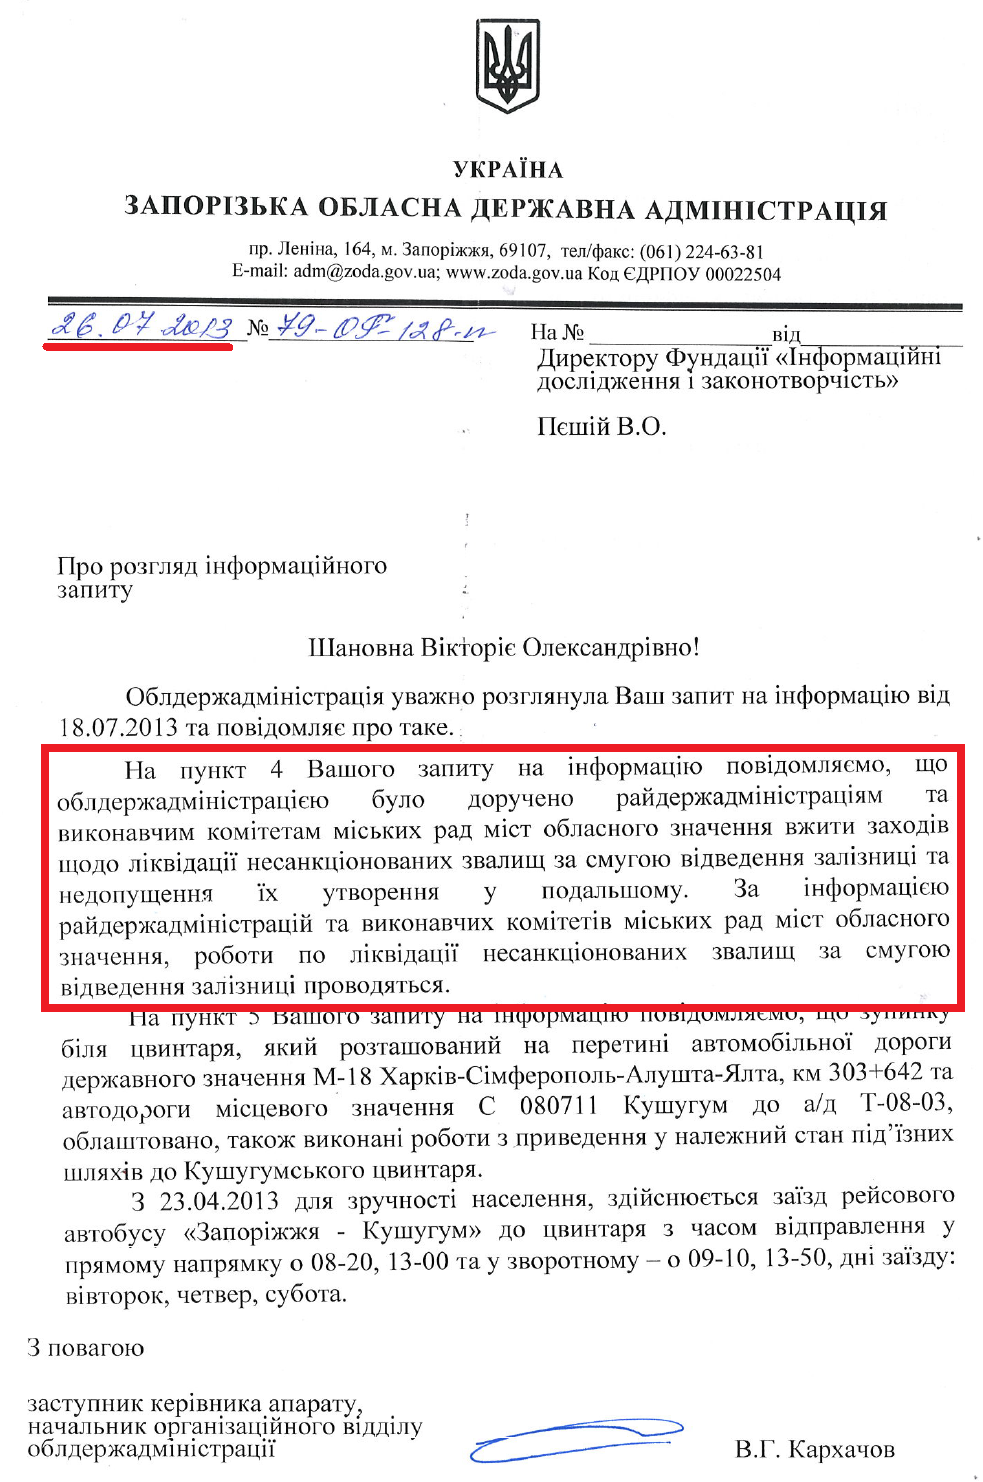 Лист заступника керівника апарату Запорізької ОДА В.Г.Кархачова від 26 липня 2013 року